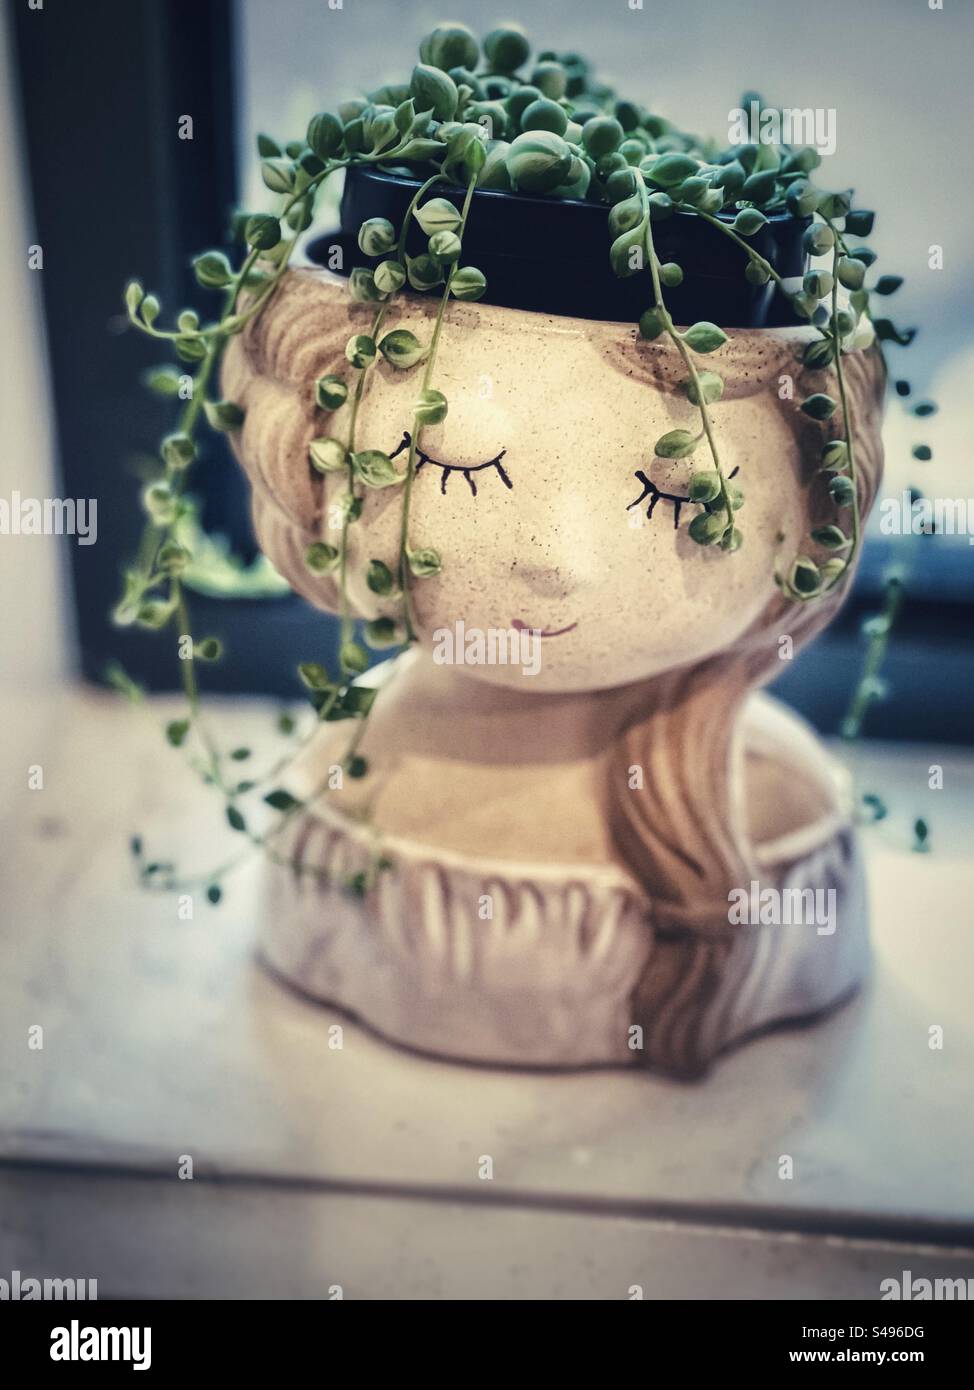 Perlenschnüre/Curio rowleyanus saftige Topfpflanze in einem Blumentopf in Form eines Mädchenkopfes auf der Fensterbank. Vintage-Ästhetik. Selektiver Fokus. Pflanzliches grünes Haar. Stockfoto